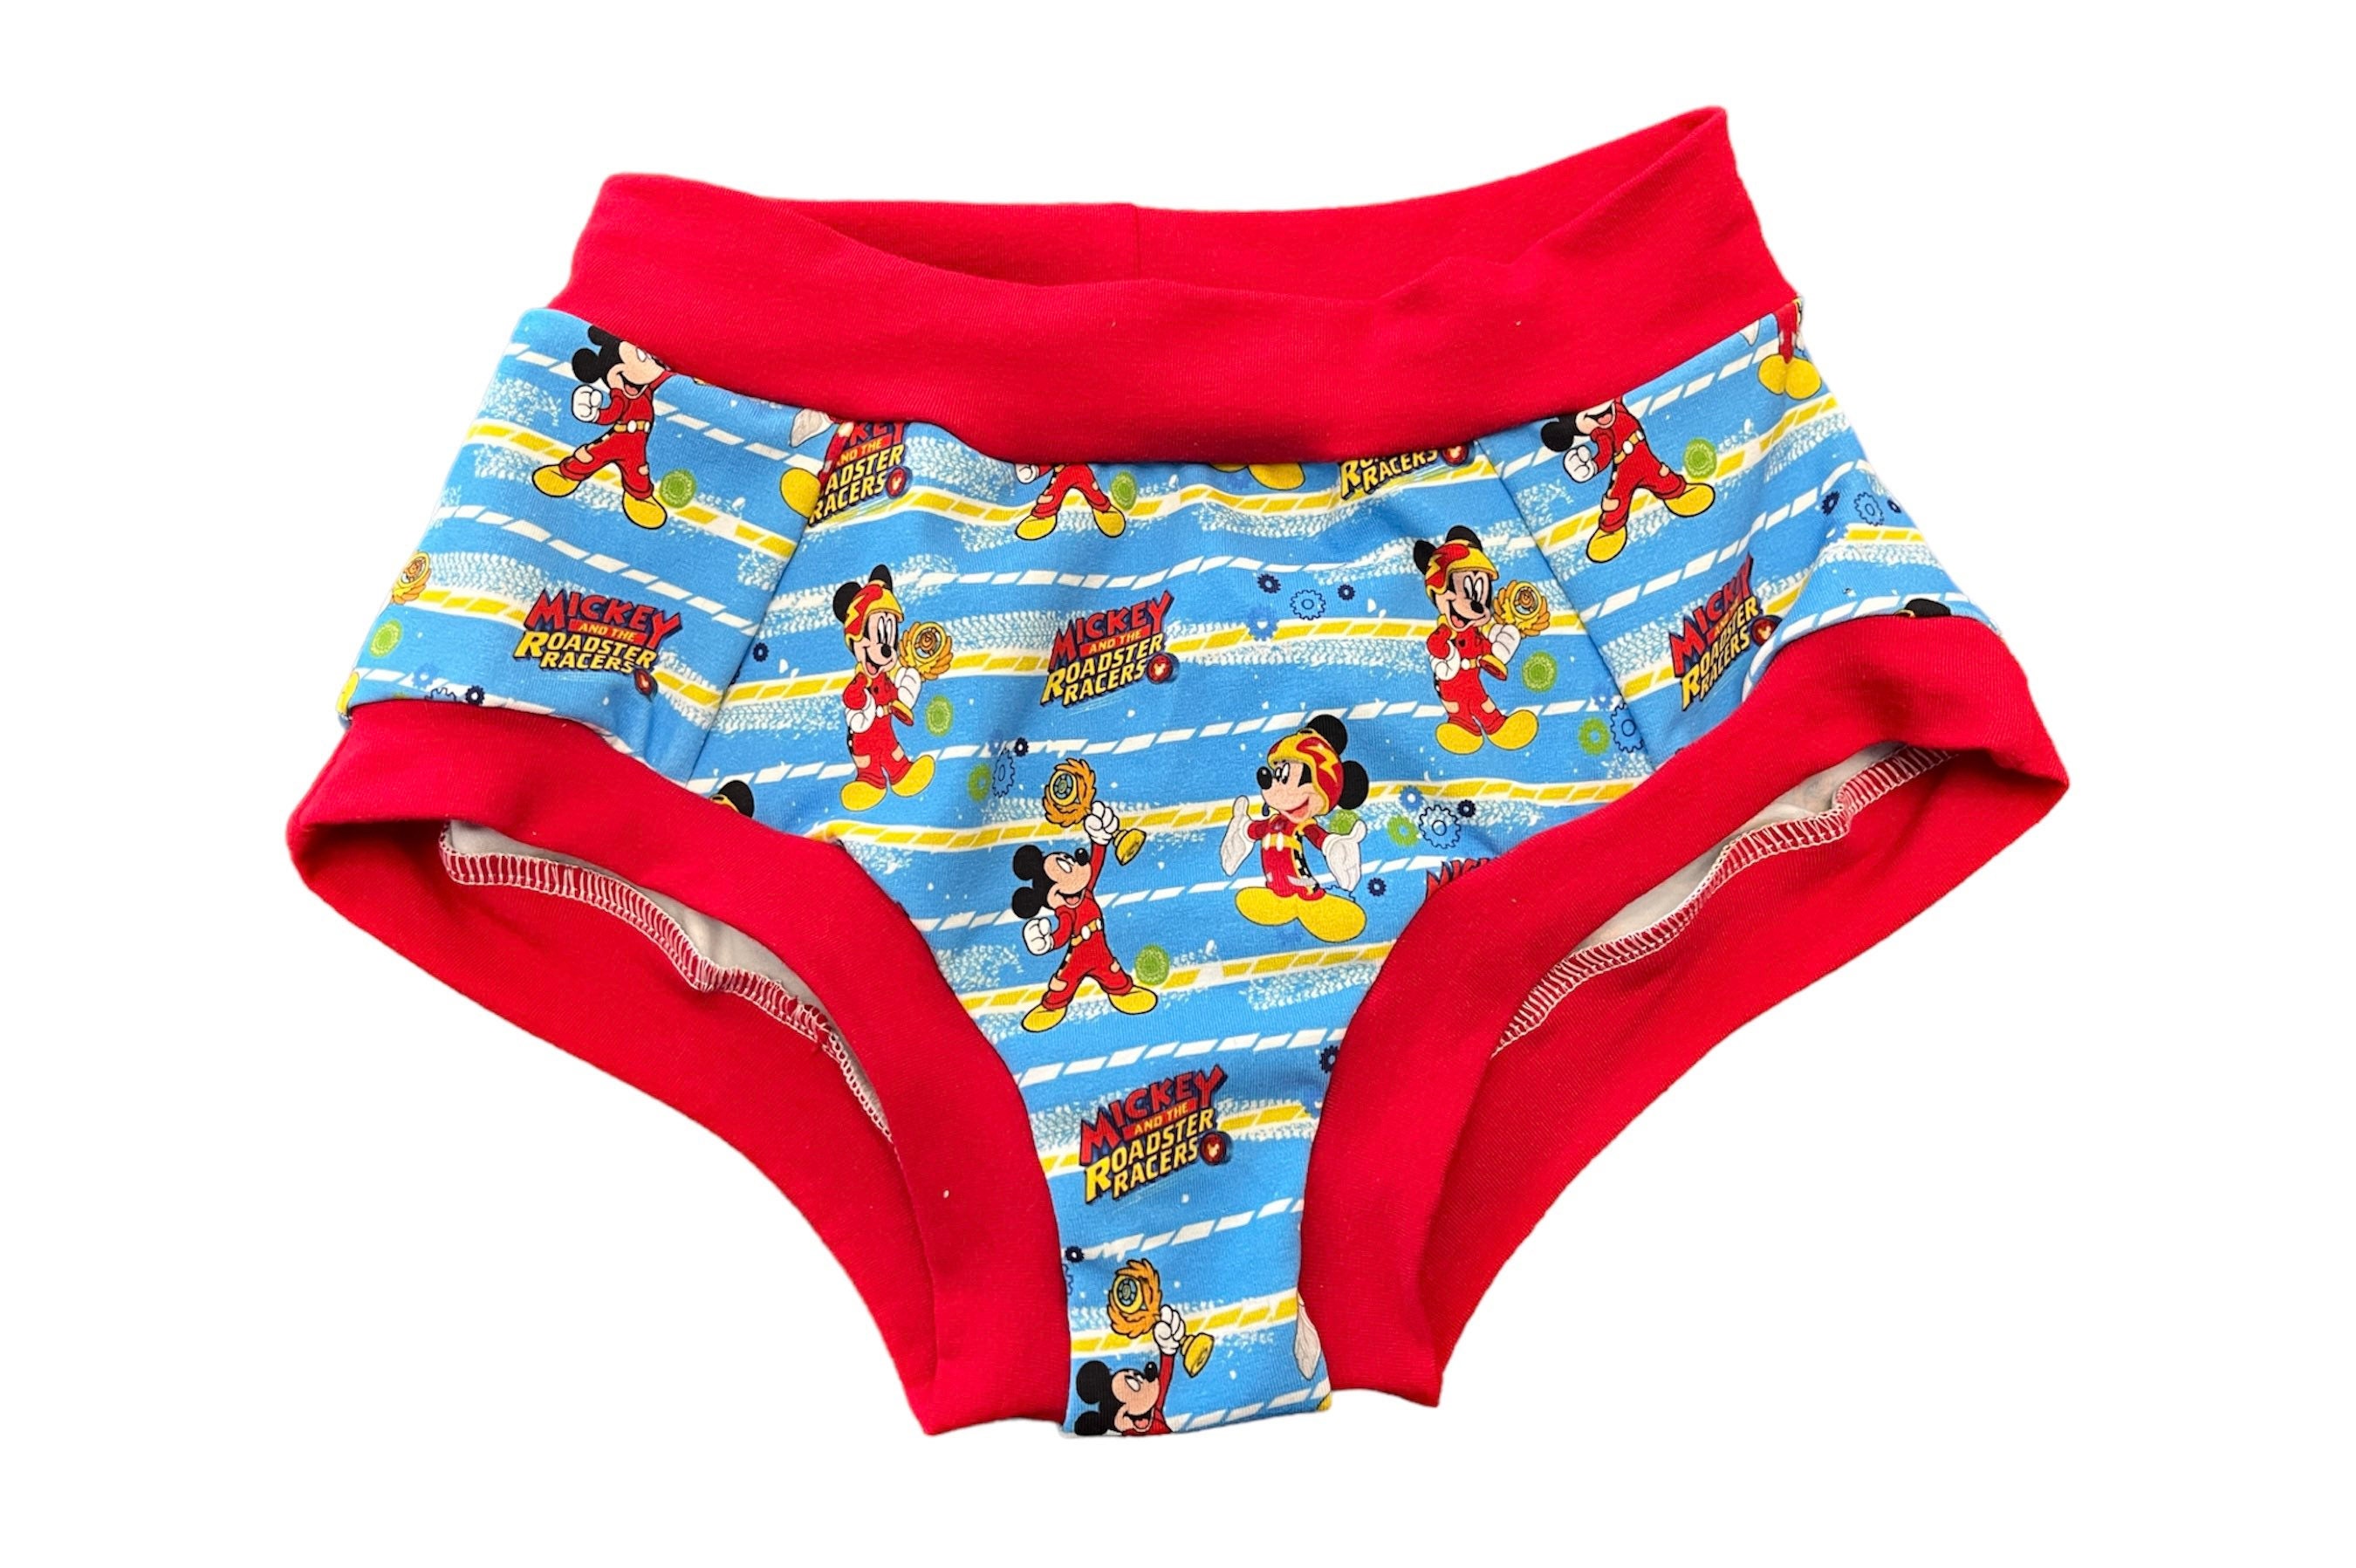 Boys Size 14 Briefs, Kids Underwear, Boys Briefs, Boys Underwear, Custom  Underwear, Sensory Clothes, Autistic Apparel, -  Hong Kong